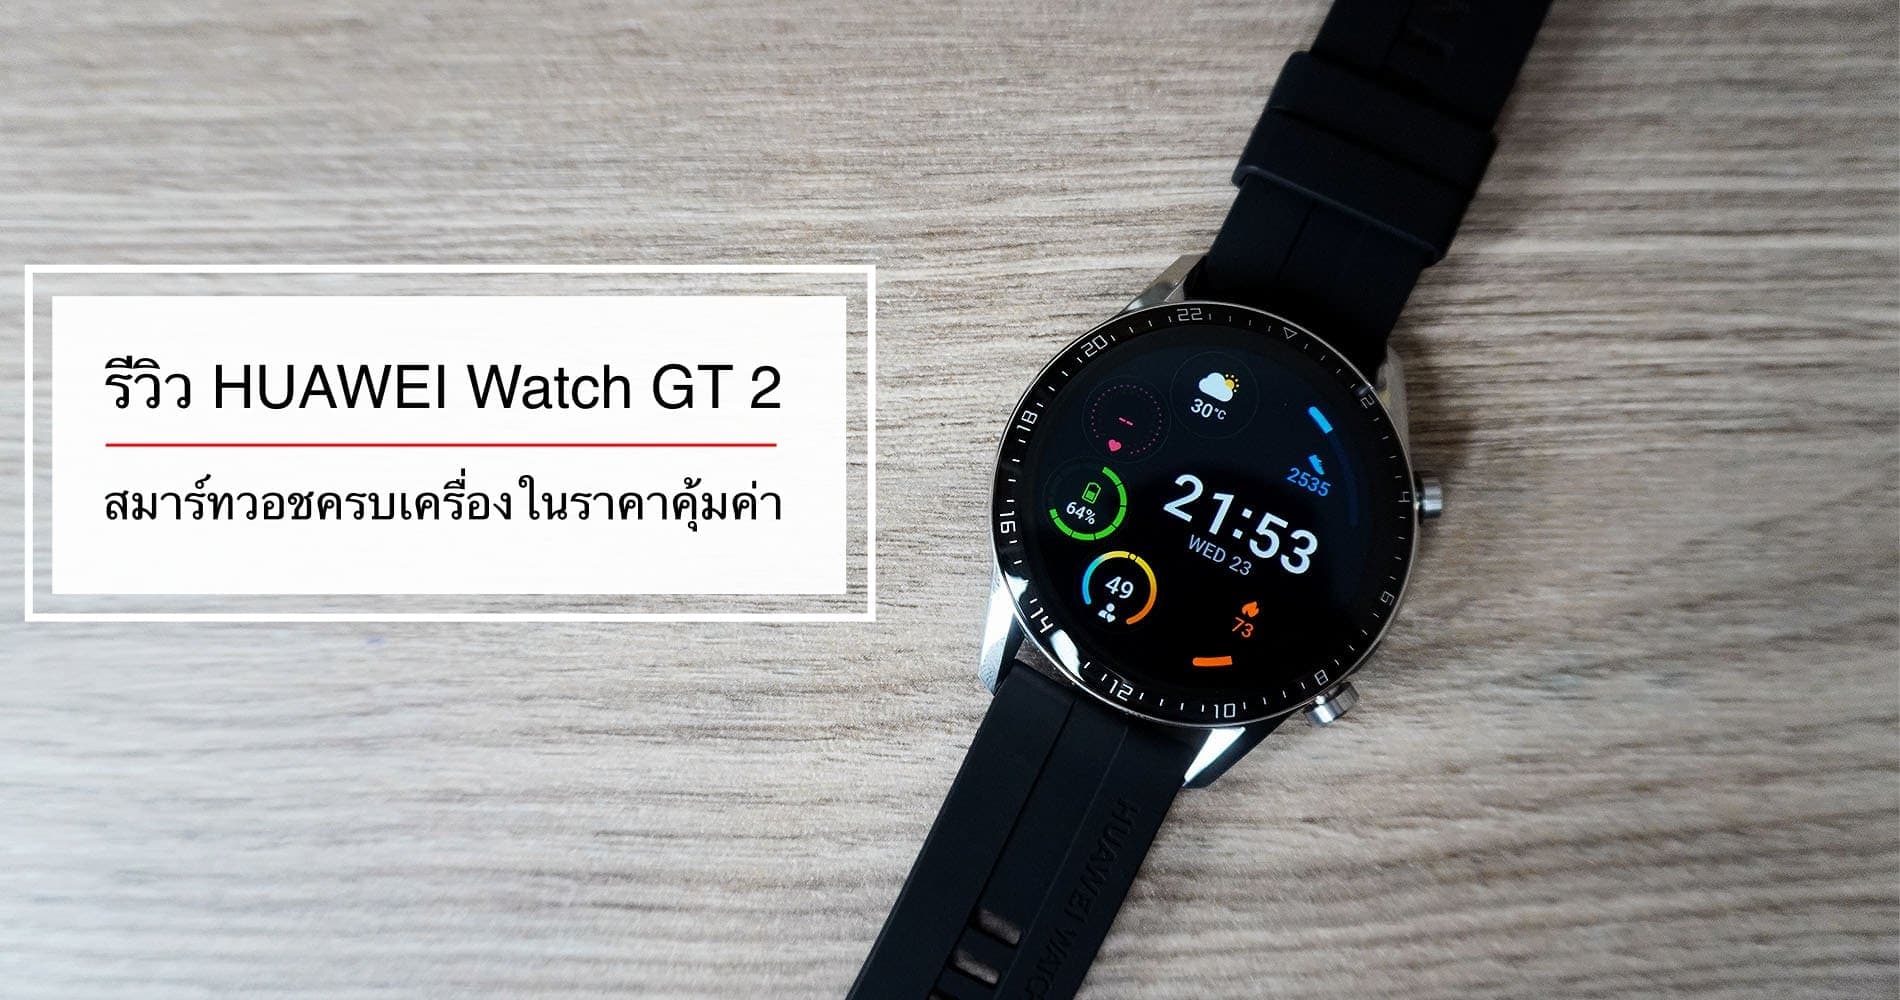 รีวิว HUAWEI Watch GT 2 ครบทุกสิ่งที่สมาร์ทวอชควรมี วัดความเครียดได้ โทรได้ มี GPS แบตอึด ราคาเริ่มต้น 6,490 บาท 1